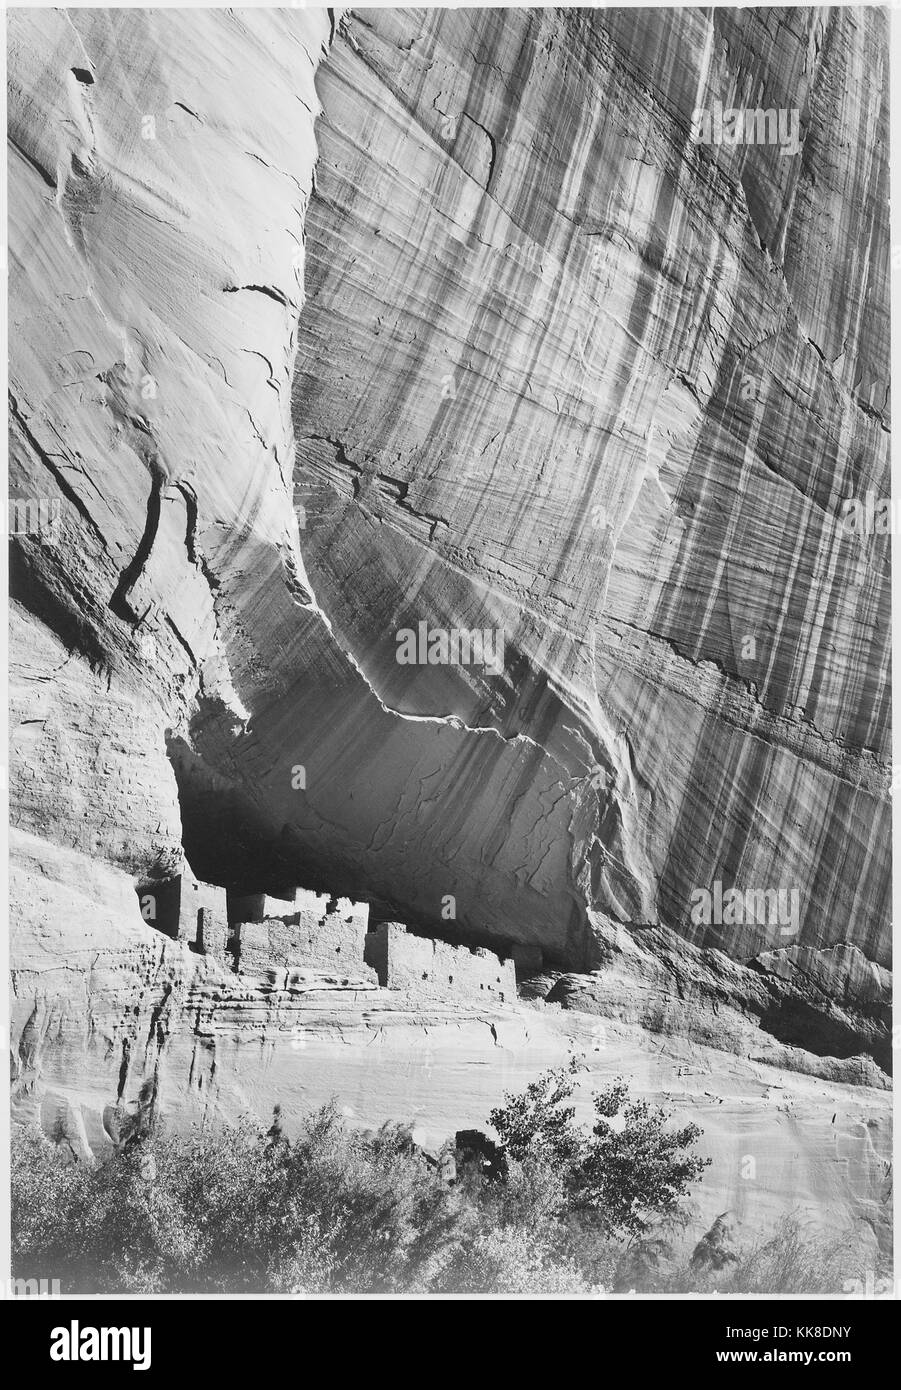 Une photographie en noir et blanc d'un règlement à la base d'une falaise dans le Canyon de Chelly National Monument, la région est l'une des plus anciennes zones habitées en permanence en Amérique du Nord, il est administré par le Navajo Tribal Trust de la Nation Navajo et est géré en coopération avec le National Park Service, l'image provient d'une série de photographies connu comme le projet mural par Ansel Adams, il a été commandé par le National Park Service en 1941 pour créer une fresque photographique pour le ministère de l'intérieur des capacités à Washington DC, le projet a pris fin en raison de la Seconde Guerre mondiale, Banque D'Images